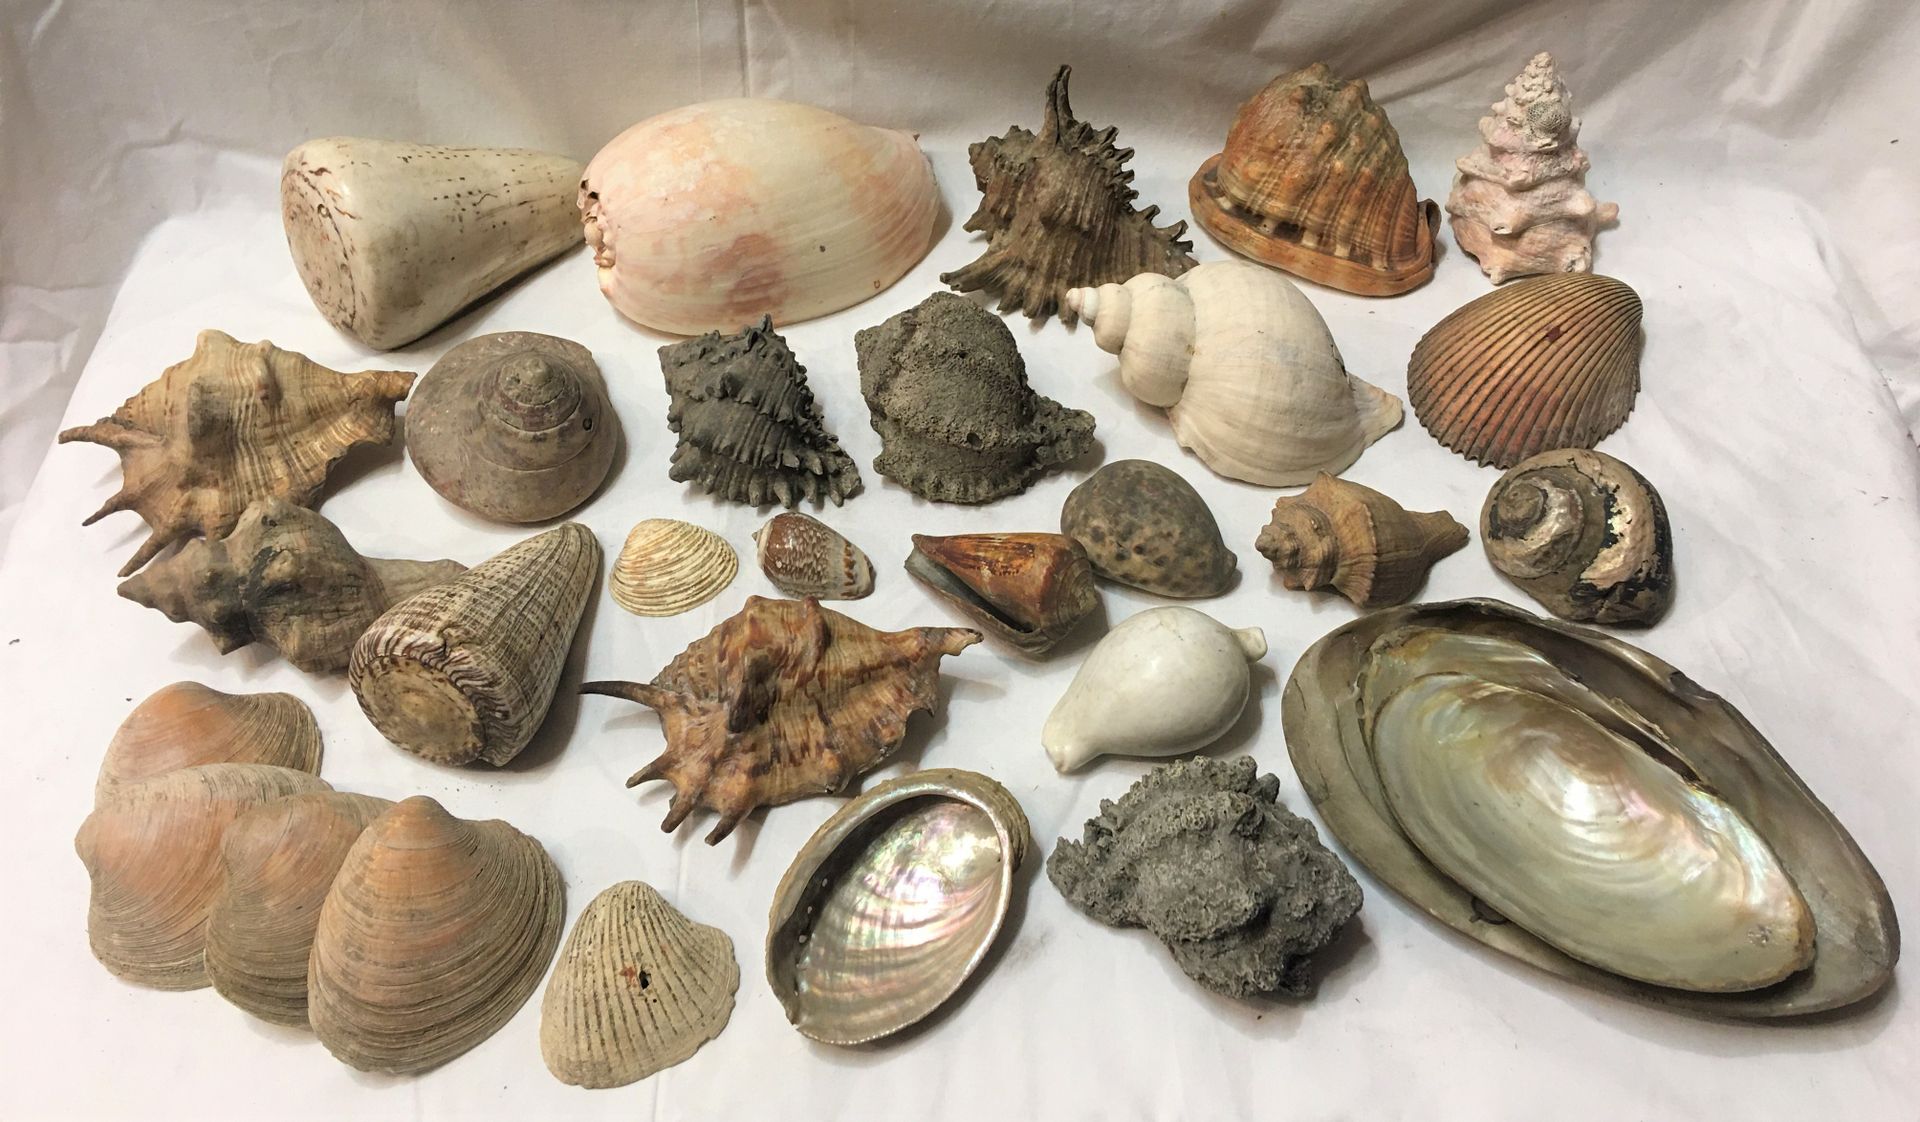 Null 一批包括20多个异国海洋贝壳的标本，包括。

丝柏属、阿诺顿塔属、科努斯属、截肢羔羊属、梅洛属、哈利奥蒂斯属、卡西斯属、布尔戈斯属

不受CITES、&hellip;